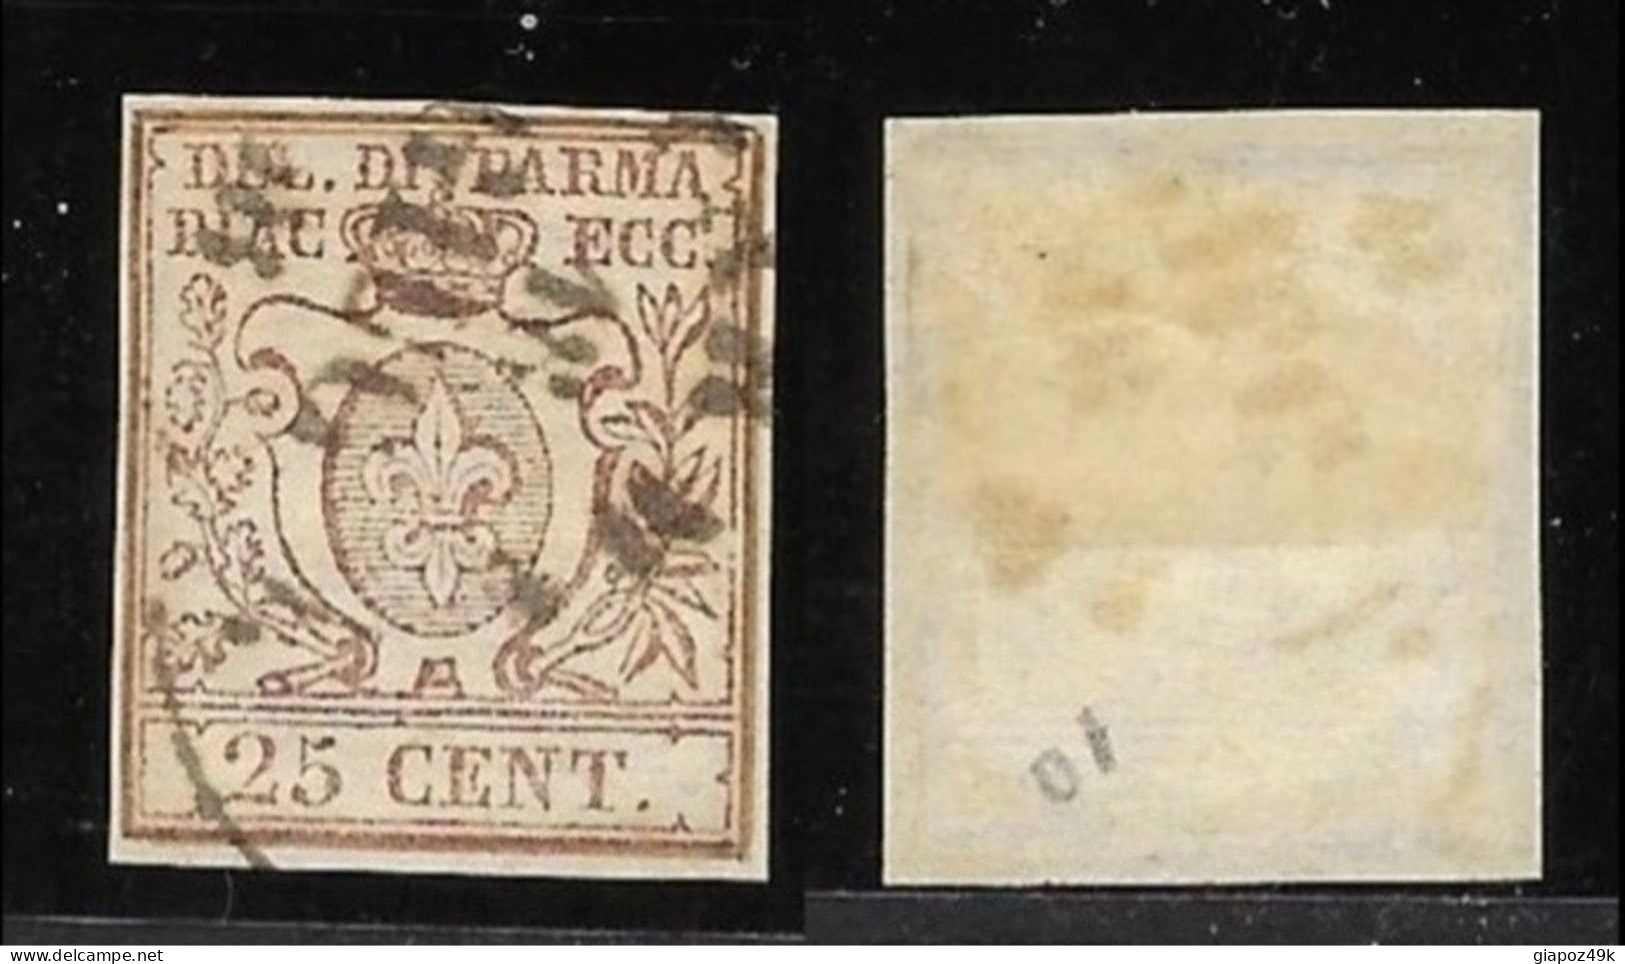 ● 1857 /59 PARMA ֍ Giglio Borbonico, Scudo E Corona Ducale ֍ N. 10 Usato ● Cat. 500 € ● Antichi Stati ● Lotto N. 343 ● - Parma